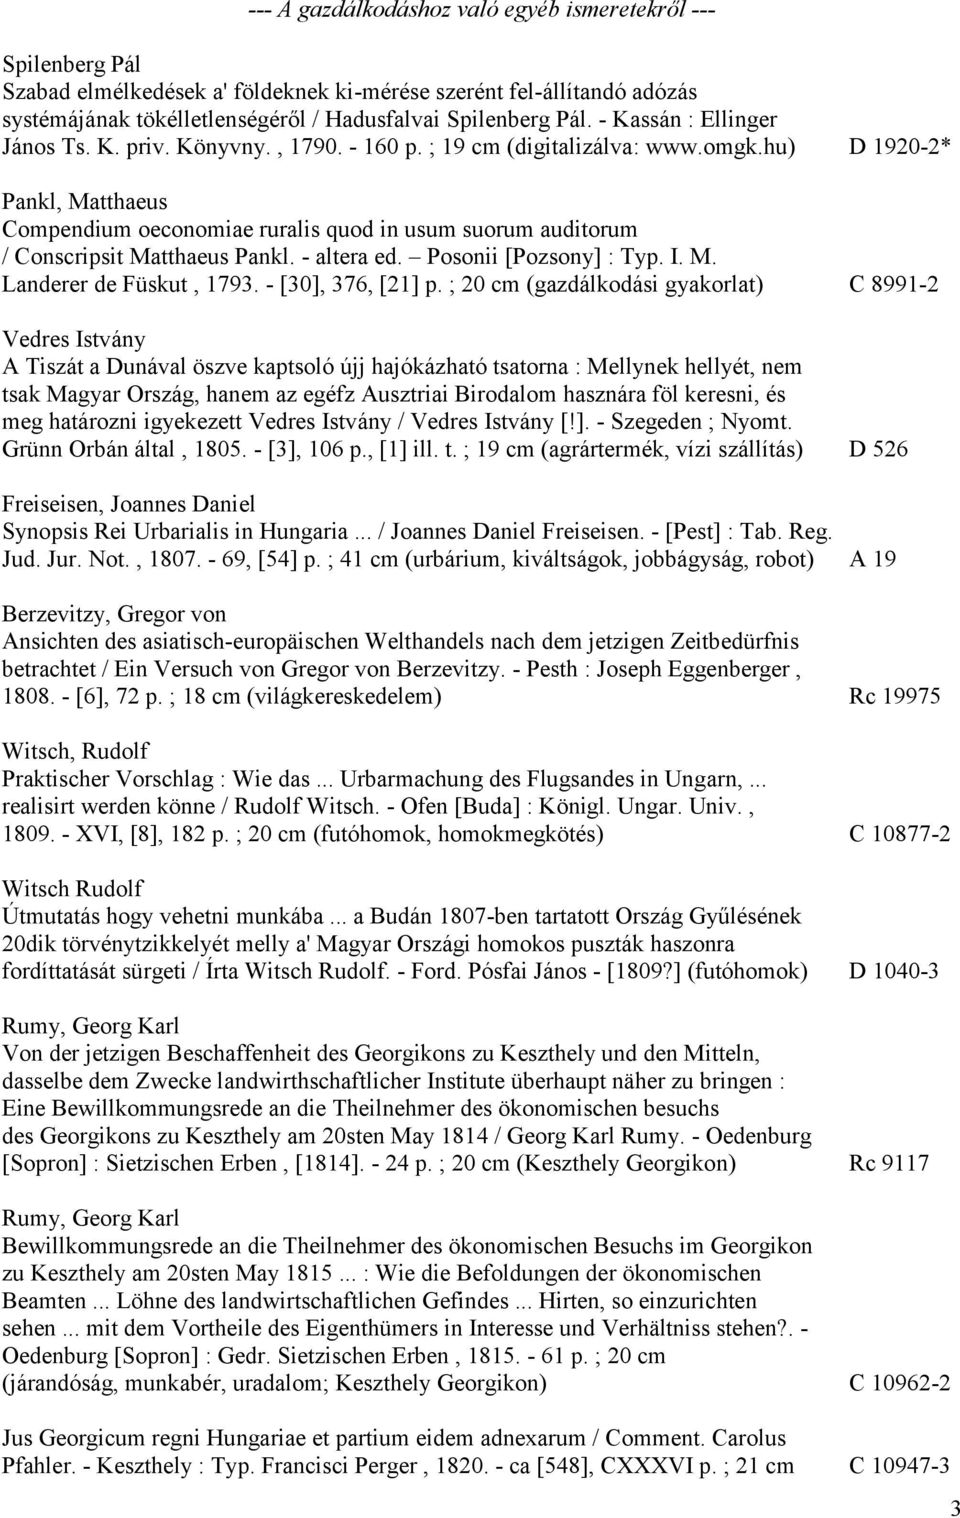 hu) D 1920-2* Pankl, Matthaeus Compendium oeconomiae ruralis quod in usum suorum auditorum / Conscripsit Matthaeus Pankl. - altera ed. Posonii [Pozsony] : Typ. I. M. Landerer de Füskut, 1793.